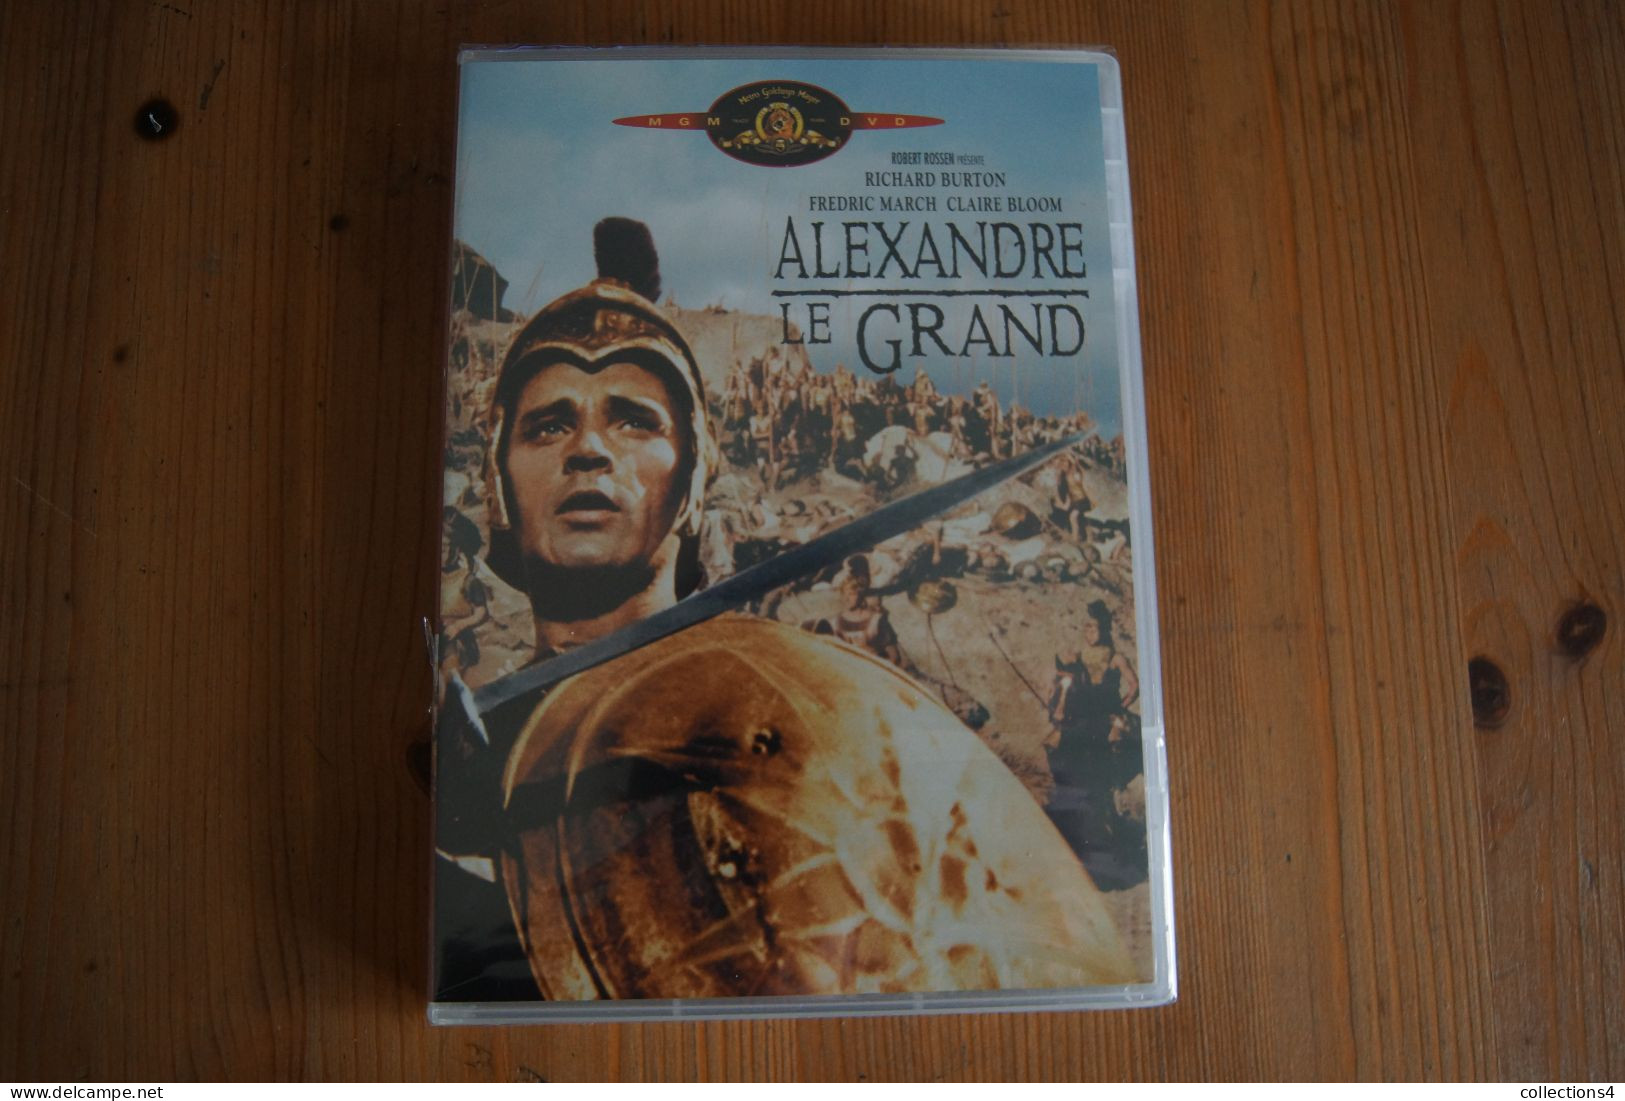 ALEXANDRE LE GRAND RICHARD BURTON F MARCH CLAIRE BLOOM  DVD NEUF SCELLE DU FILM DE ROBERT ROSSEN 1956 - Azione, Avventura